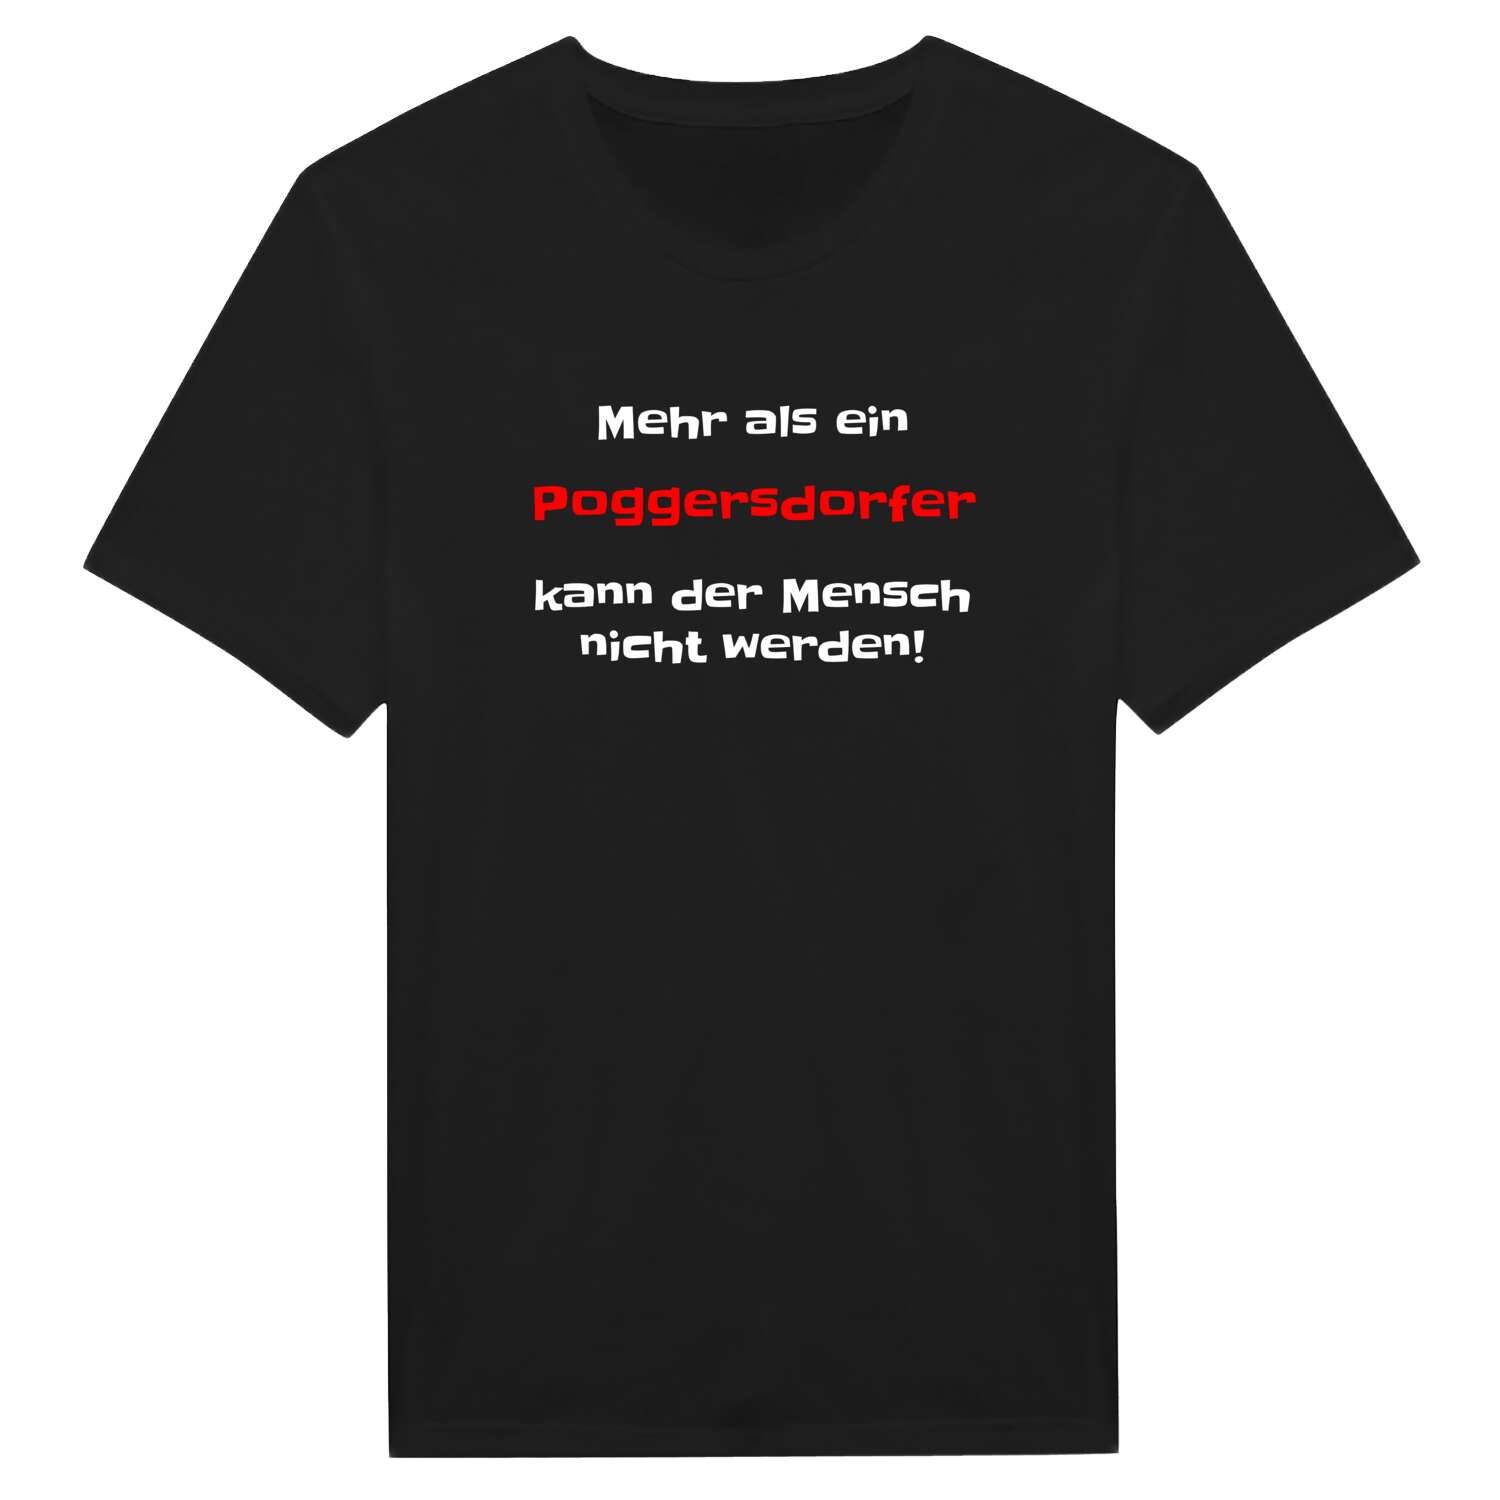 Poggersdorf T-Shirt »Mehr als ein«